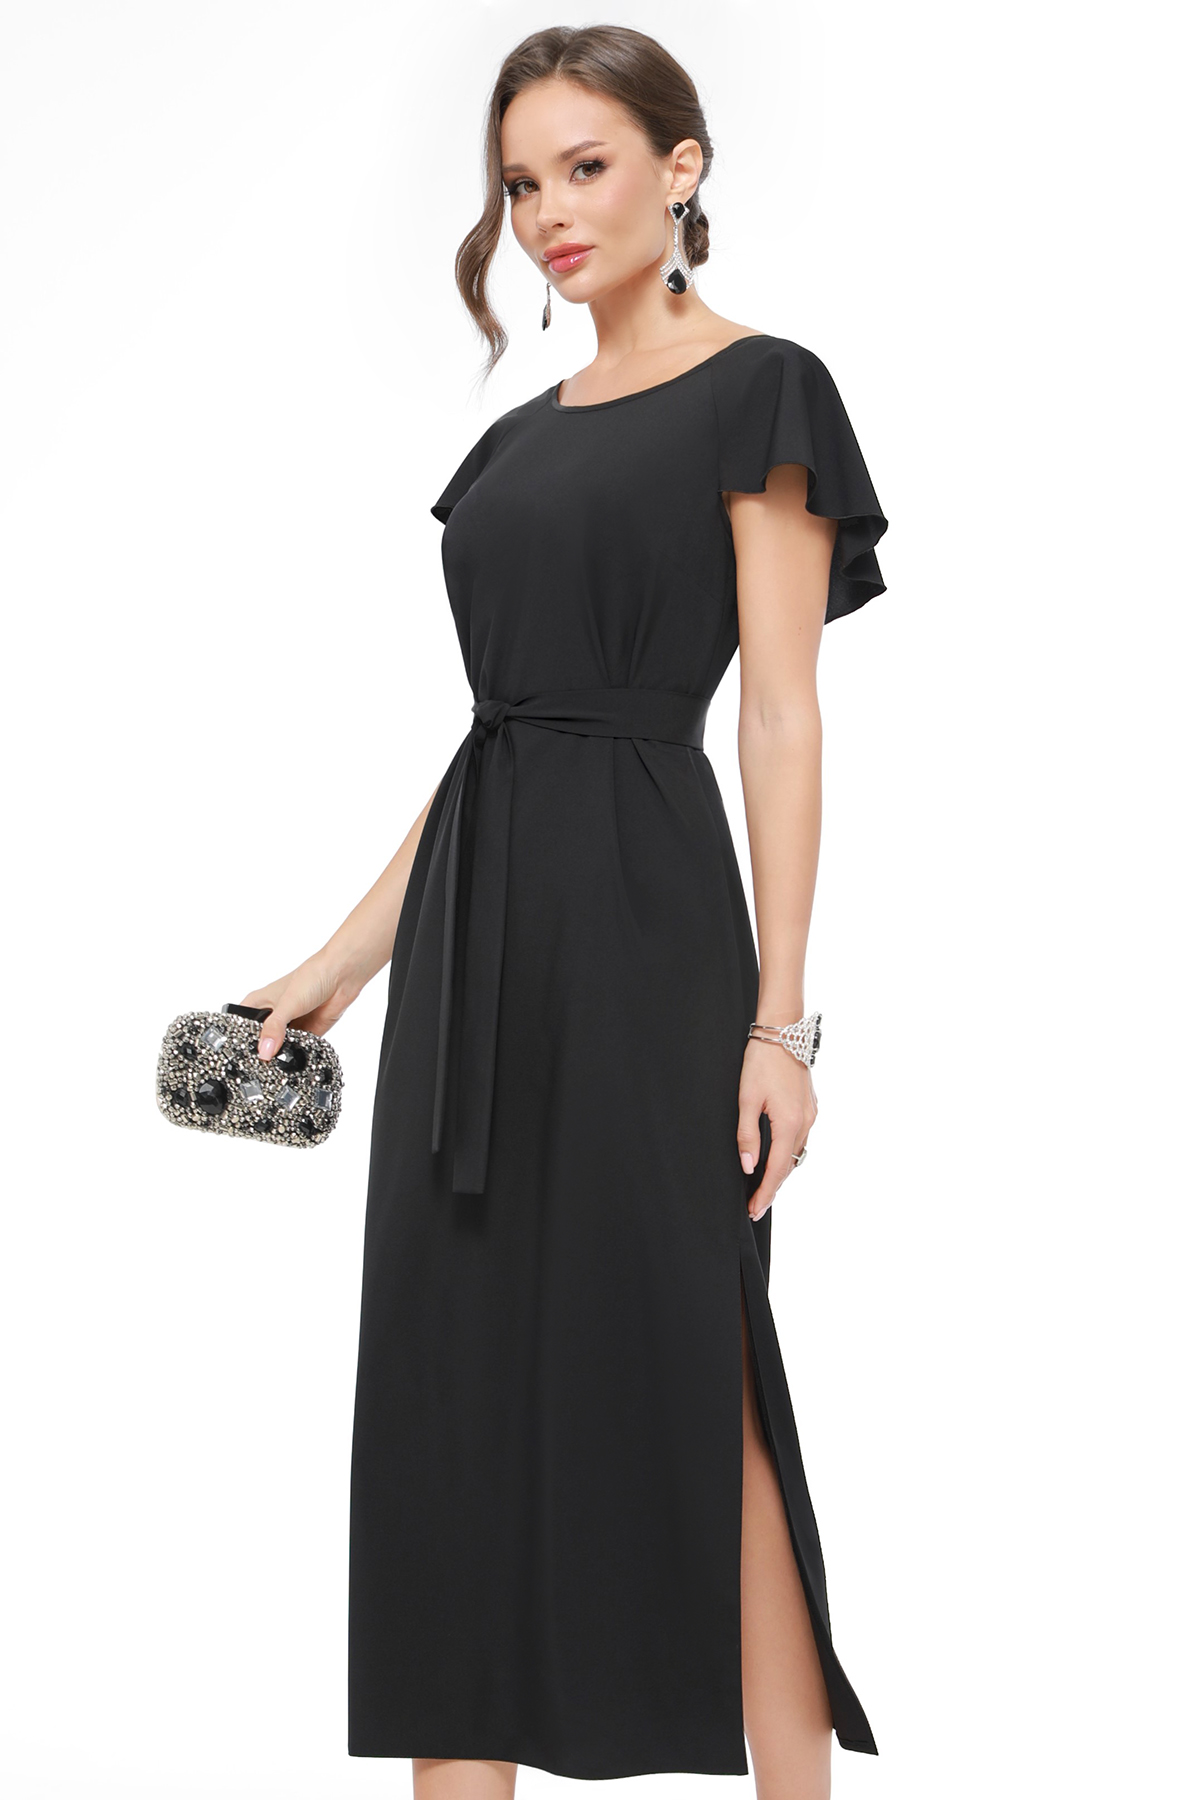 Платье женское DSTrend 0430 черное 48